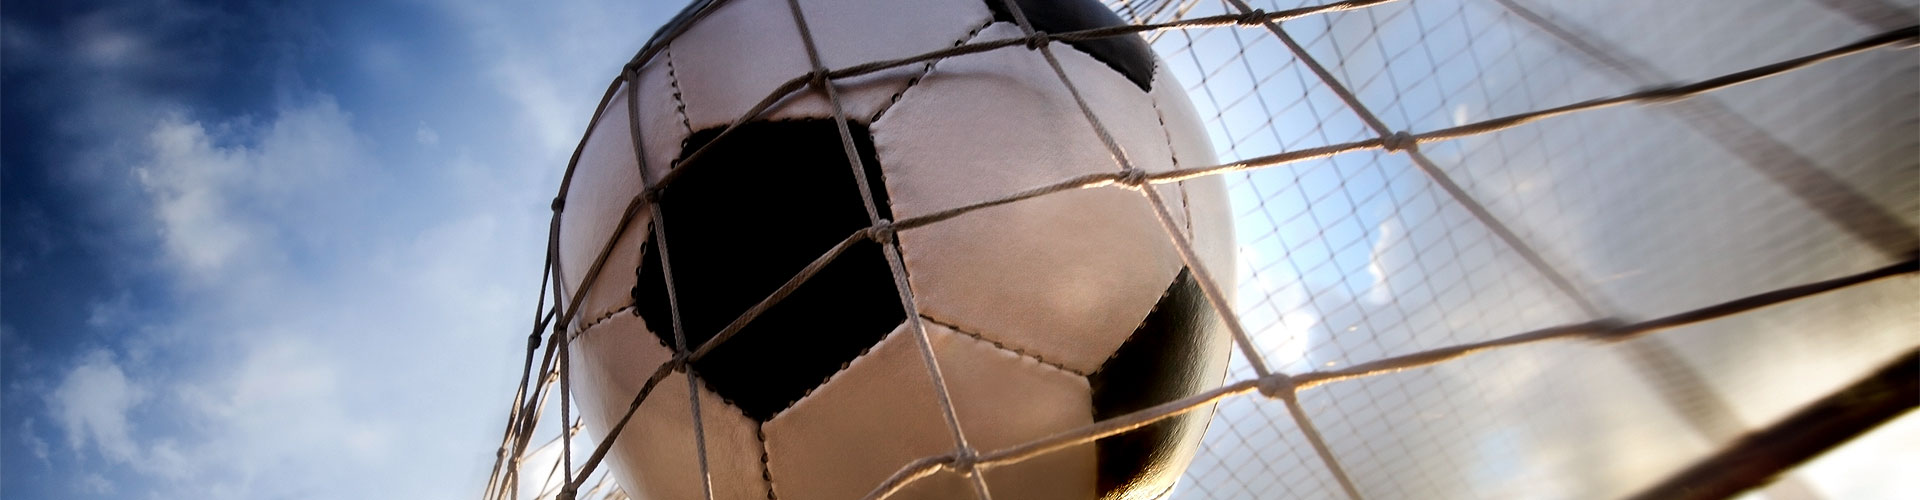 Ver la Eurocopa 2020 de fútbol en vivo en La Barriada de Alcora